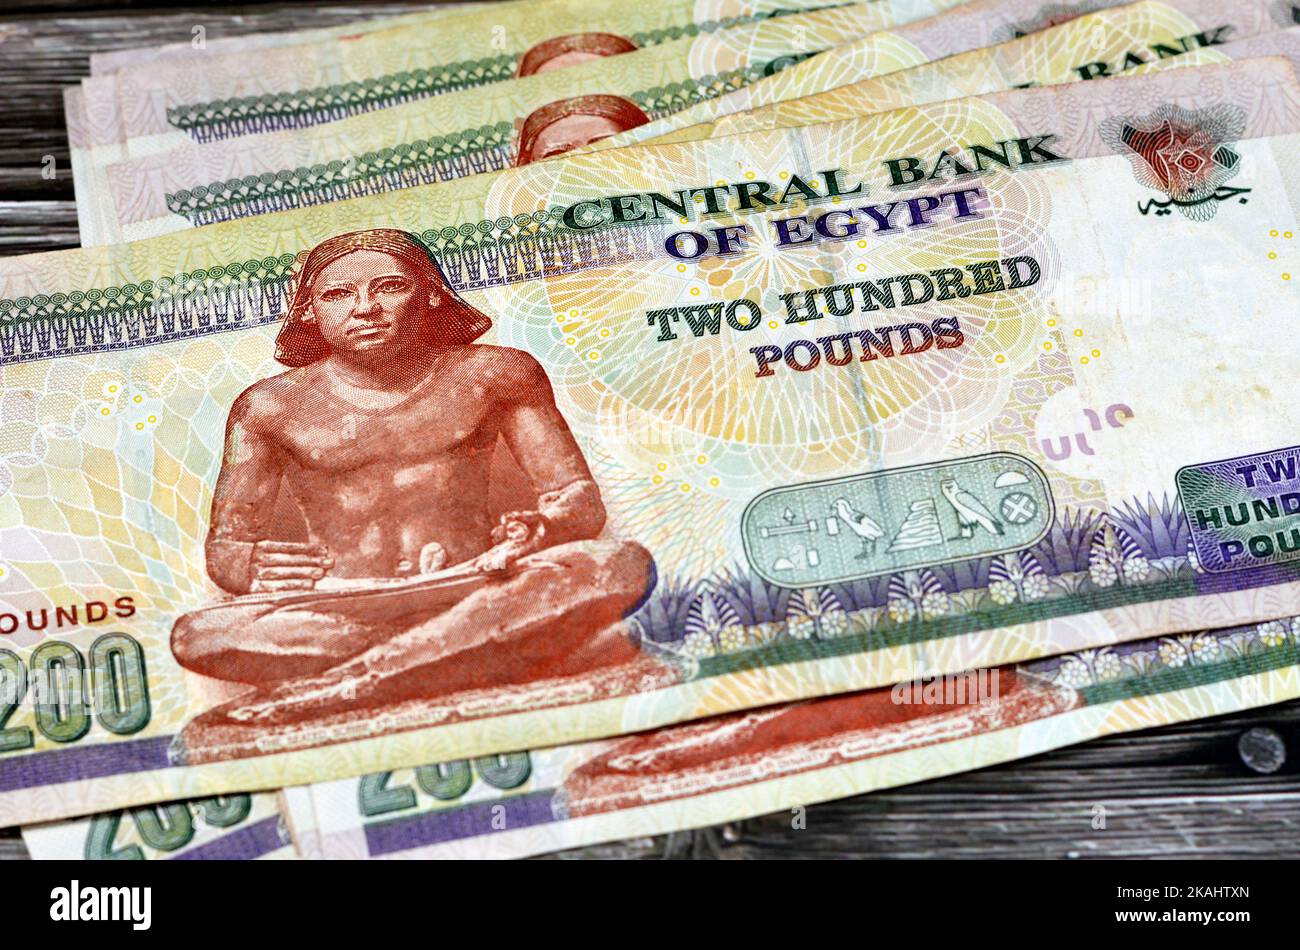 Stapel der Rückseite der 200 LE zweihundert ägyptischen Pfund Banknote zeigt den alten sitzenden Schreiber, selektive Fokus der ägyptischen Geldrechnung durch ce Stockfoto